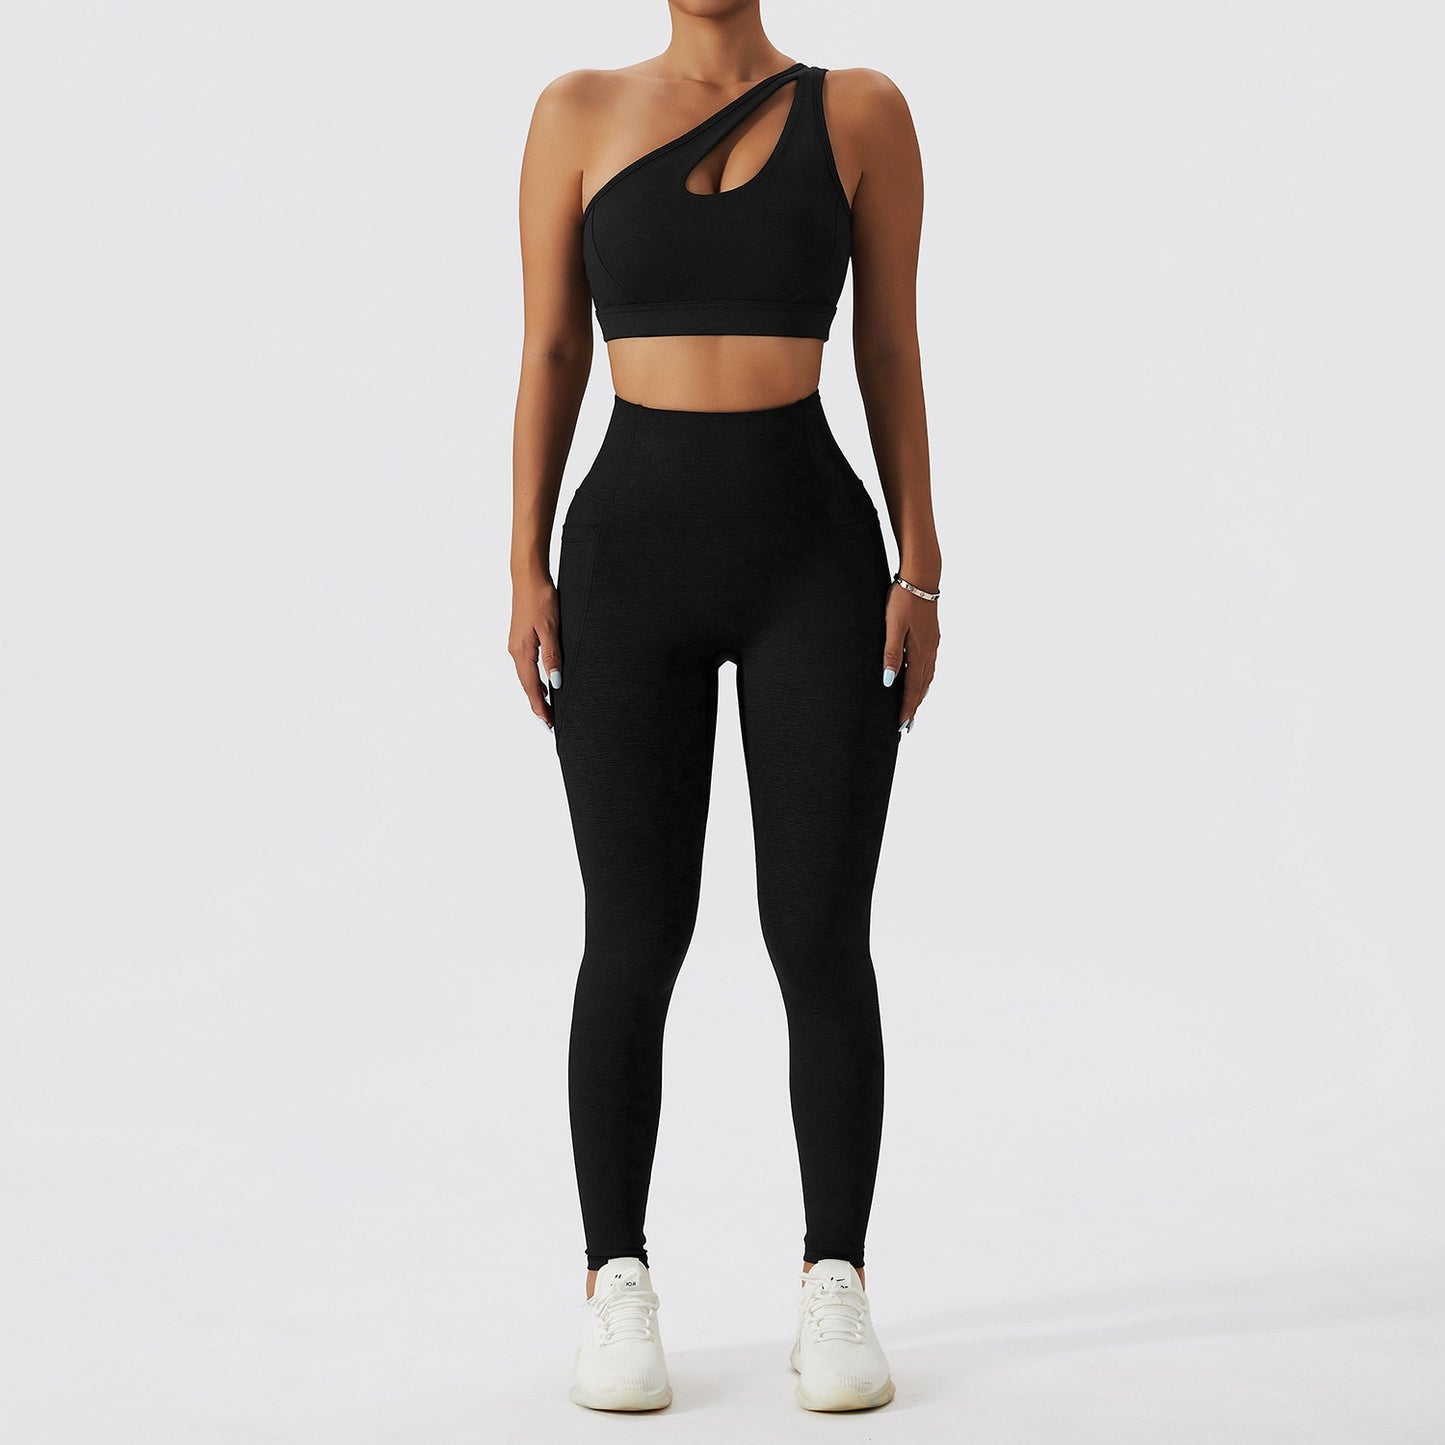 2 Piece Yoga Clothes Women&#39;s Tracksuit Athletic Wear Pilates Fitness Suit Gym Workout Push Up Clothes Sports Bra Leggings Suit